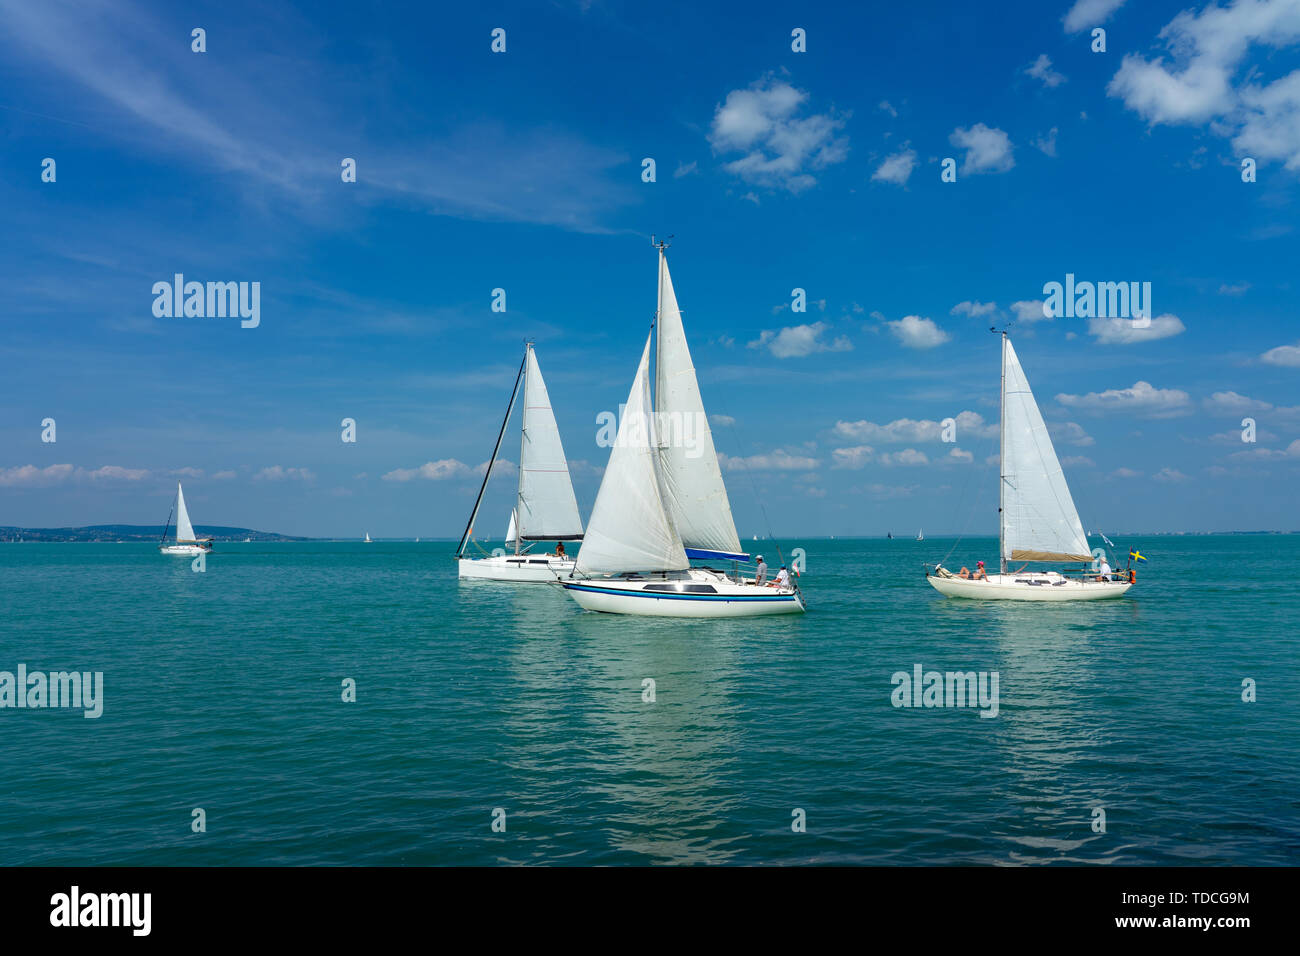 Sail Boats on the blue Lake Balaton Hungary Stock Photo - Alamy